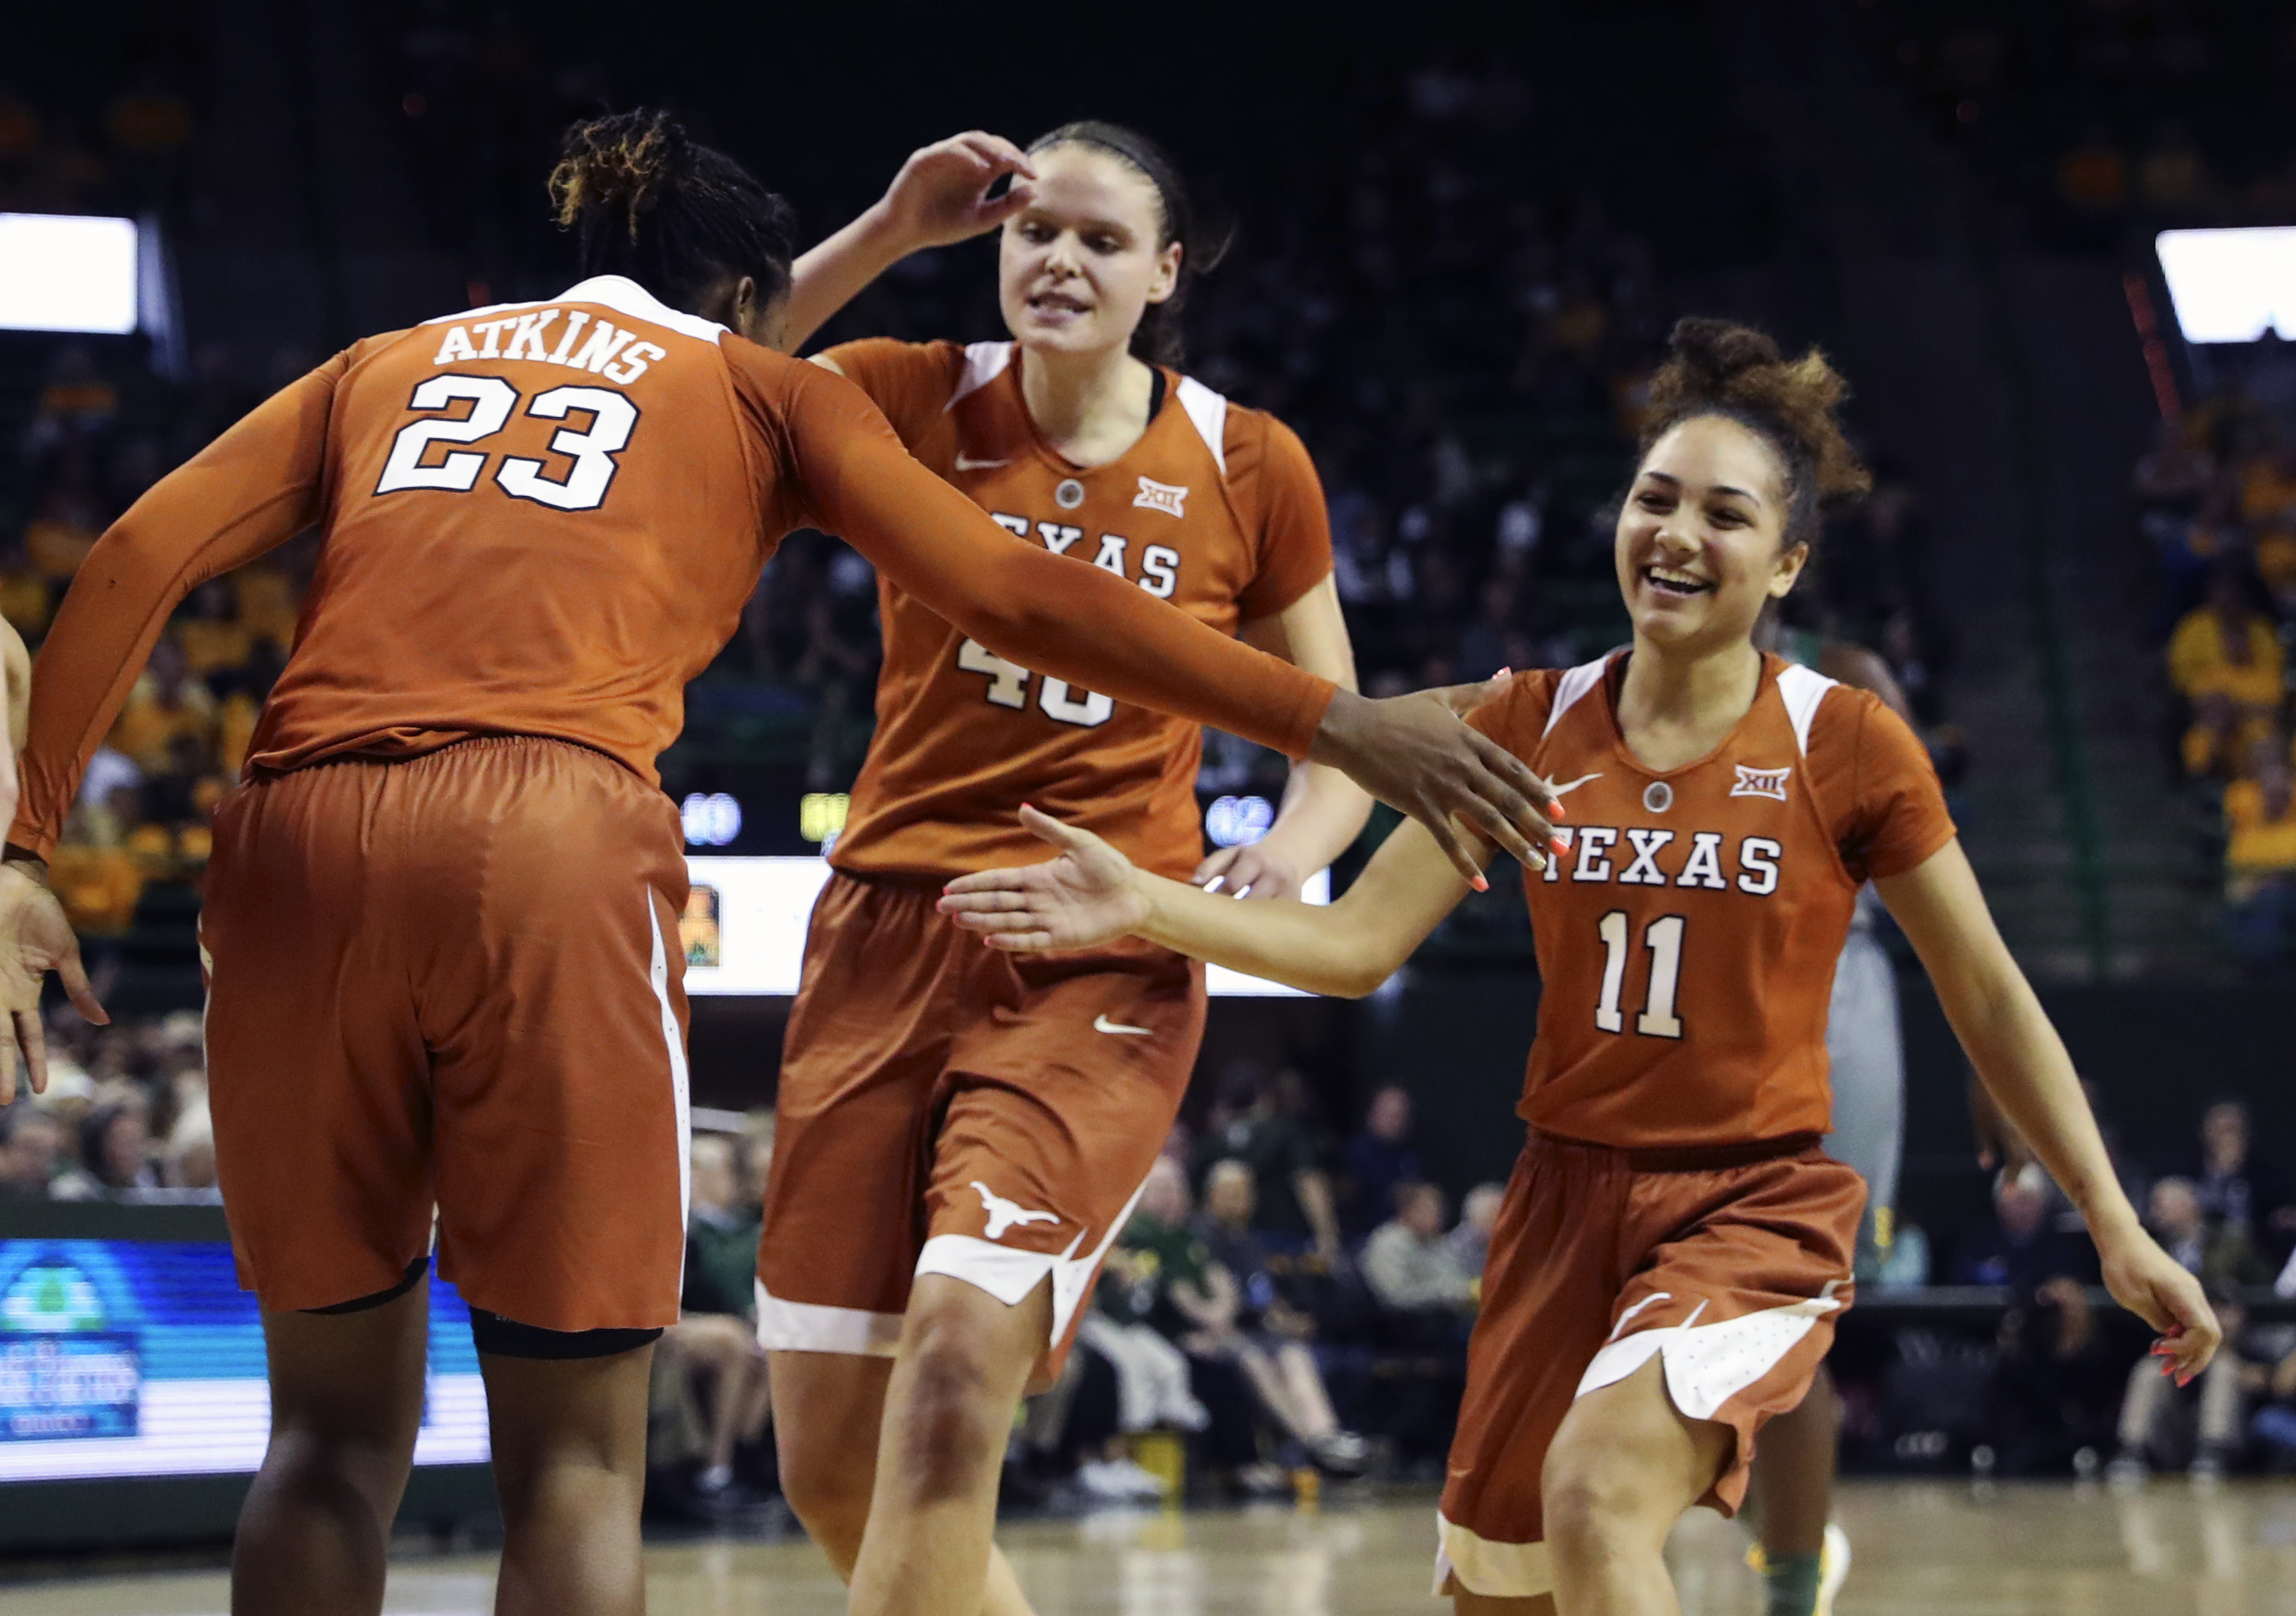 Texas Longhorns Women's Team Gets Top NCAA Honor Over UConn3051 x 2147